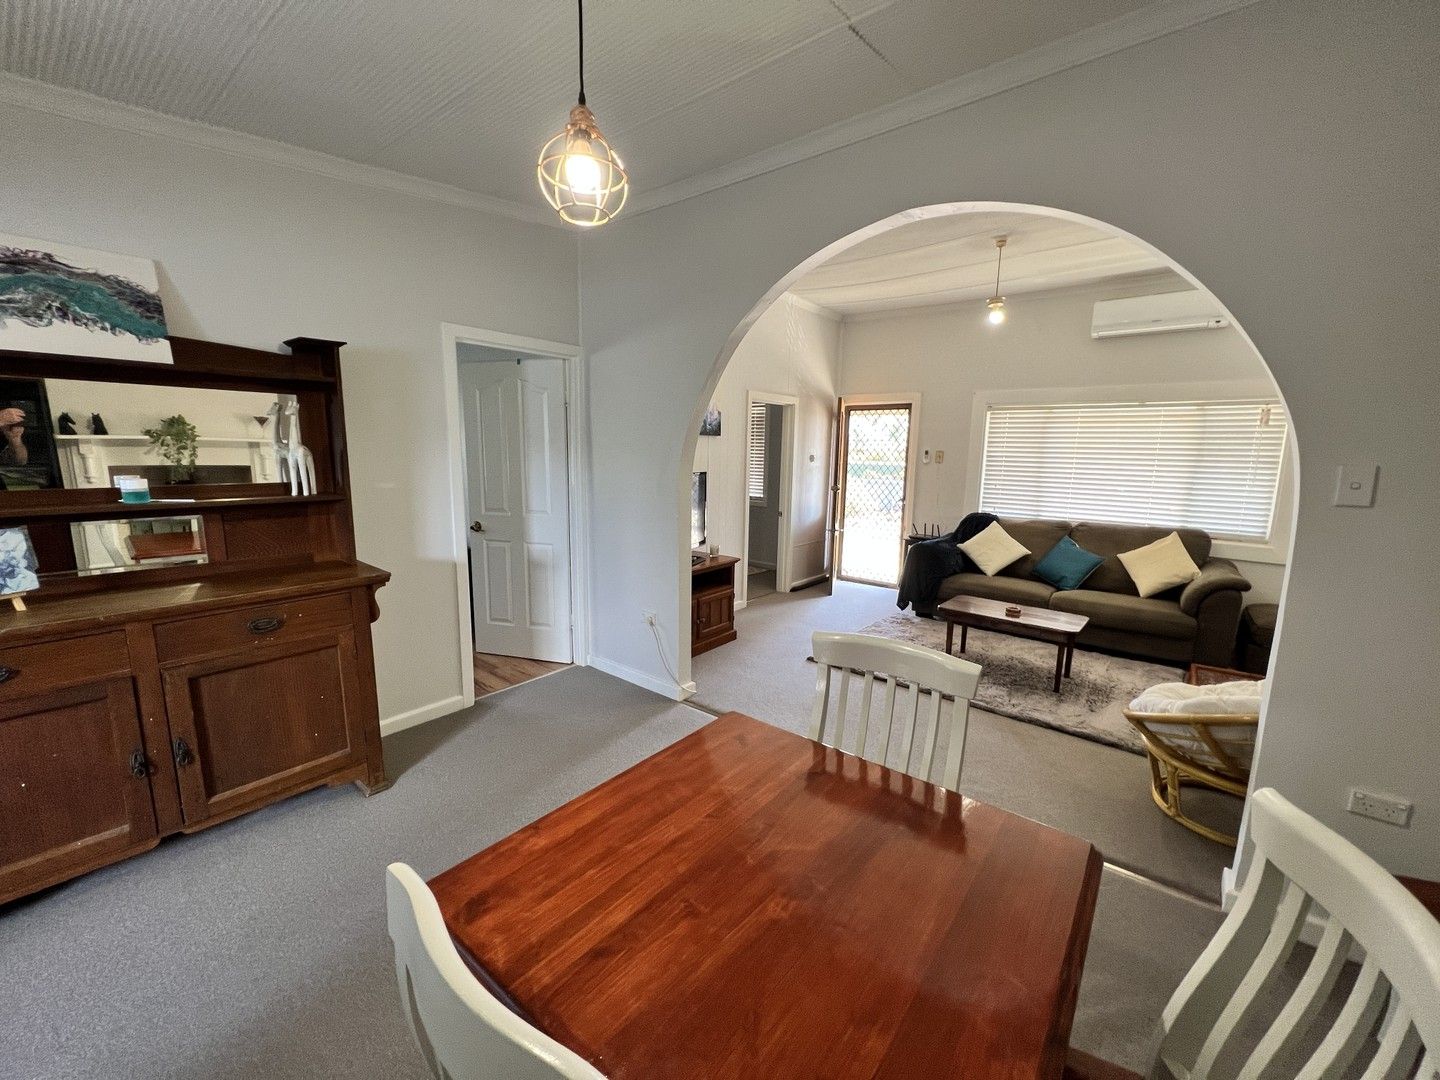 2 bedrooms House in 101 Ryan Street BROKEN HILL NSW, 2880